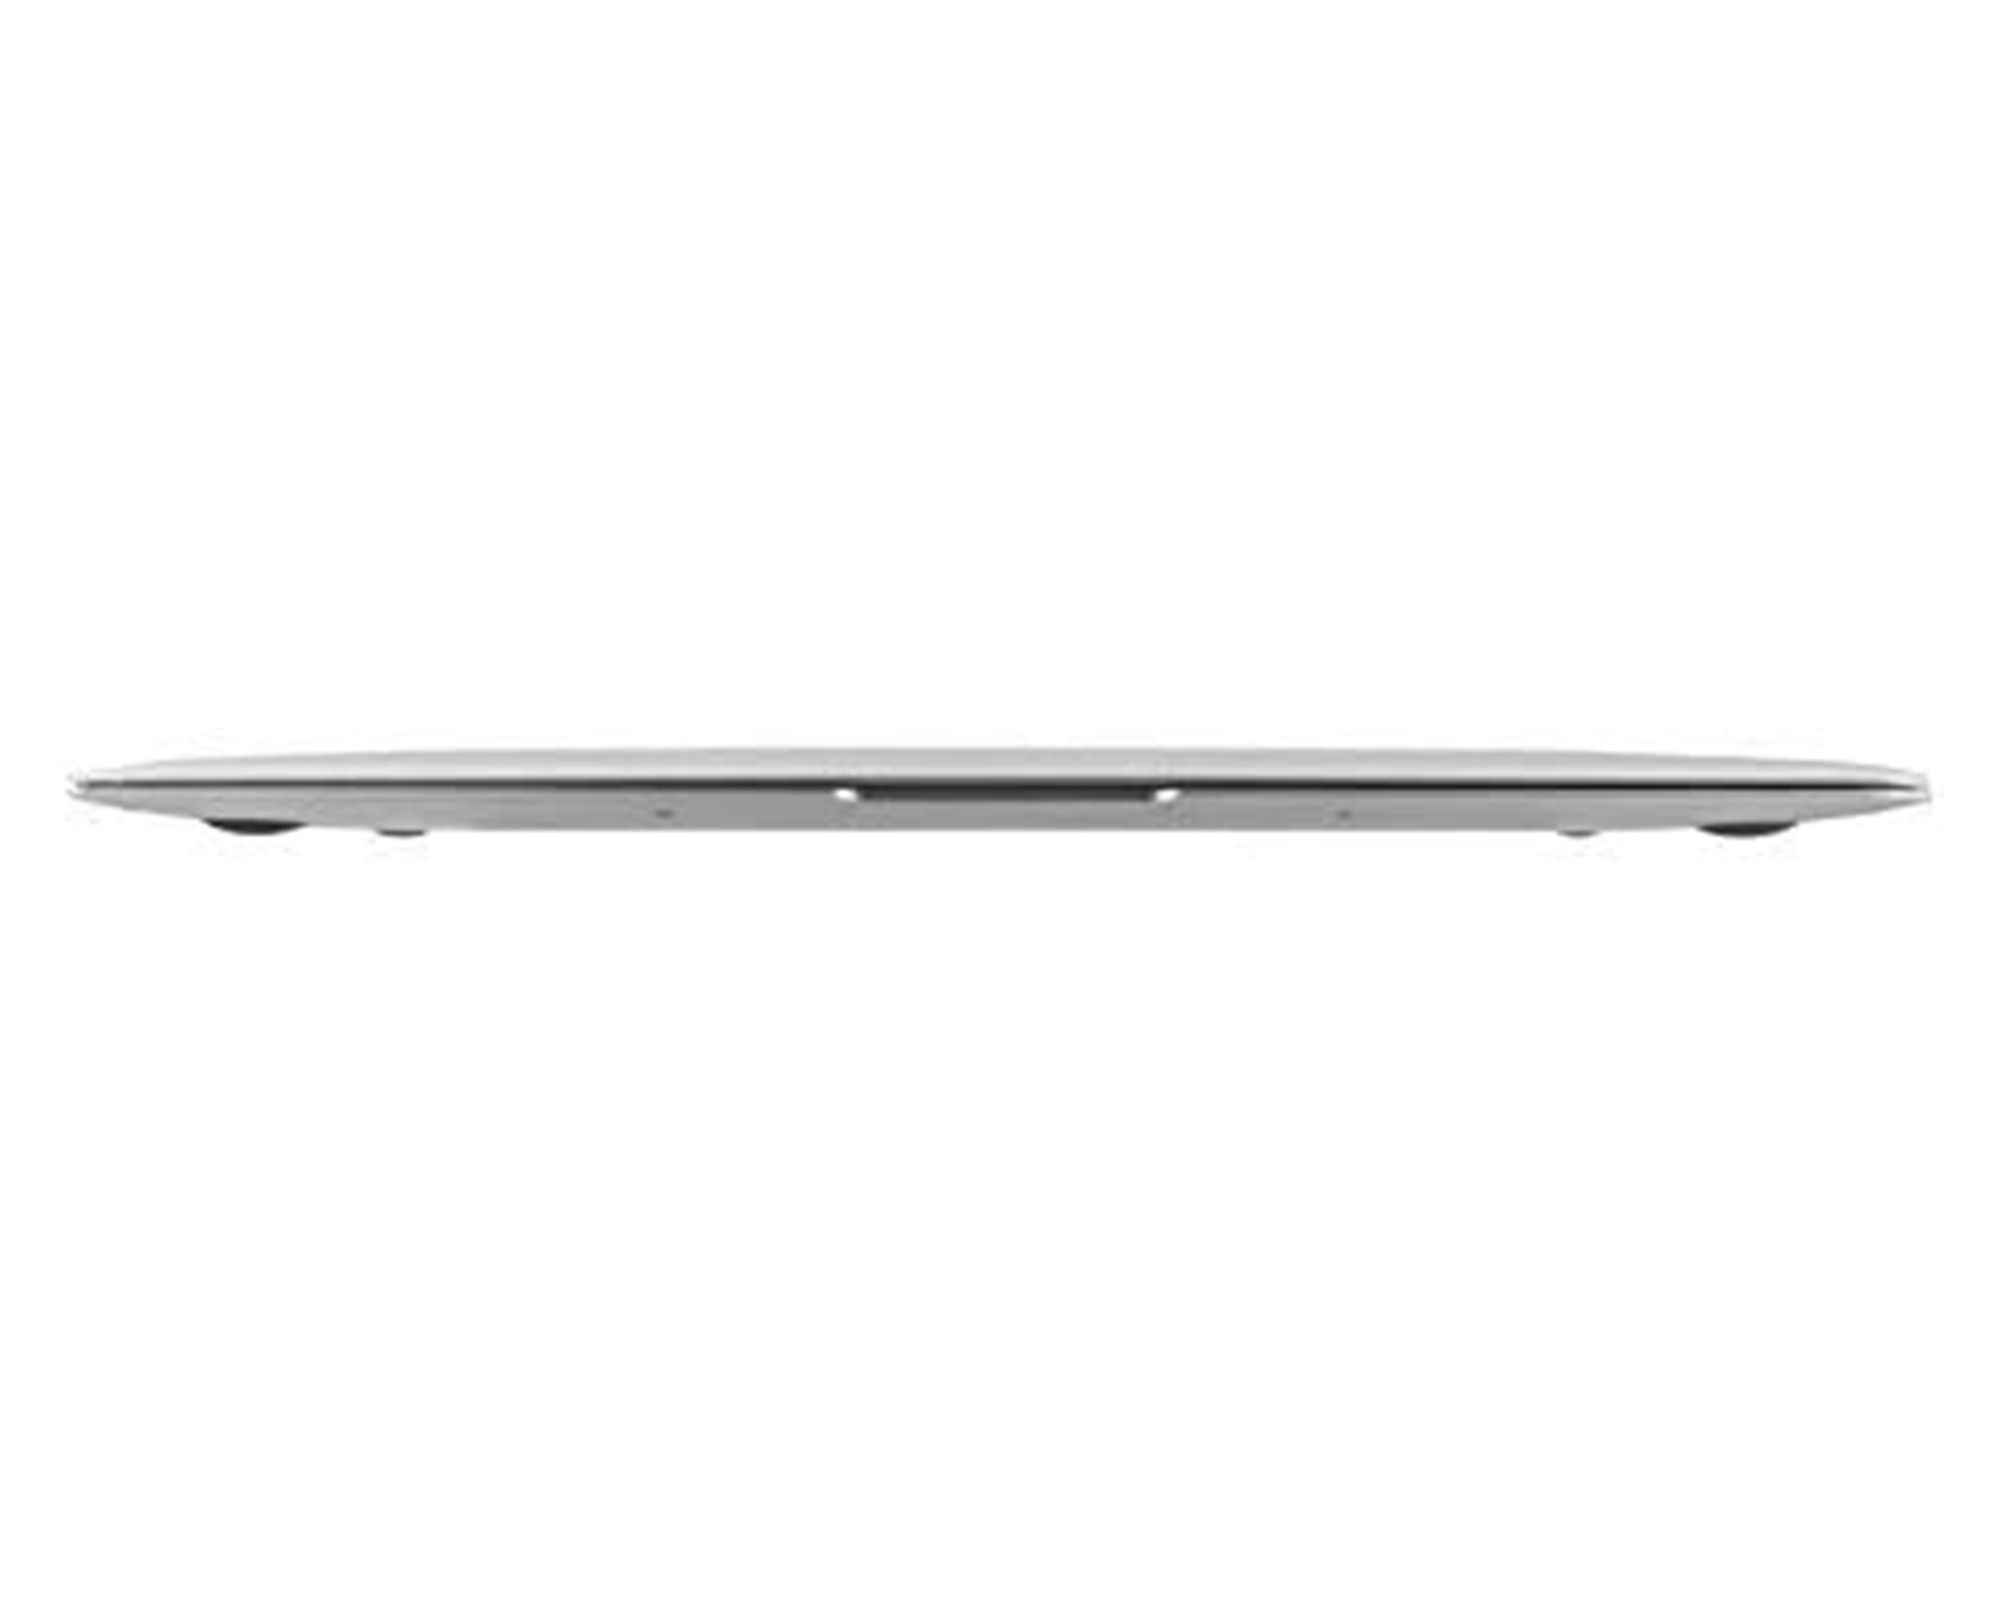 Restored Apple MacBook Air MJVE2LL/A Intel Core i5-5250U X2 1.6GHz 4GB 128GB SSD Silver (Refurbished) - image 4 of 7